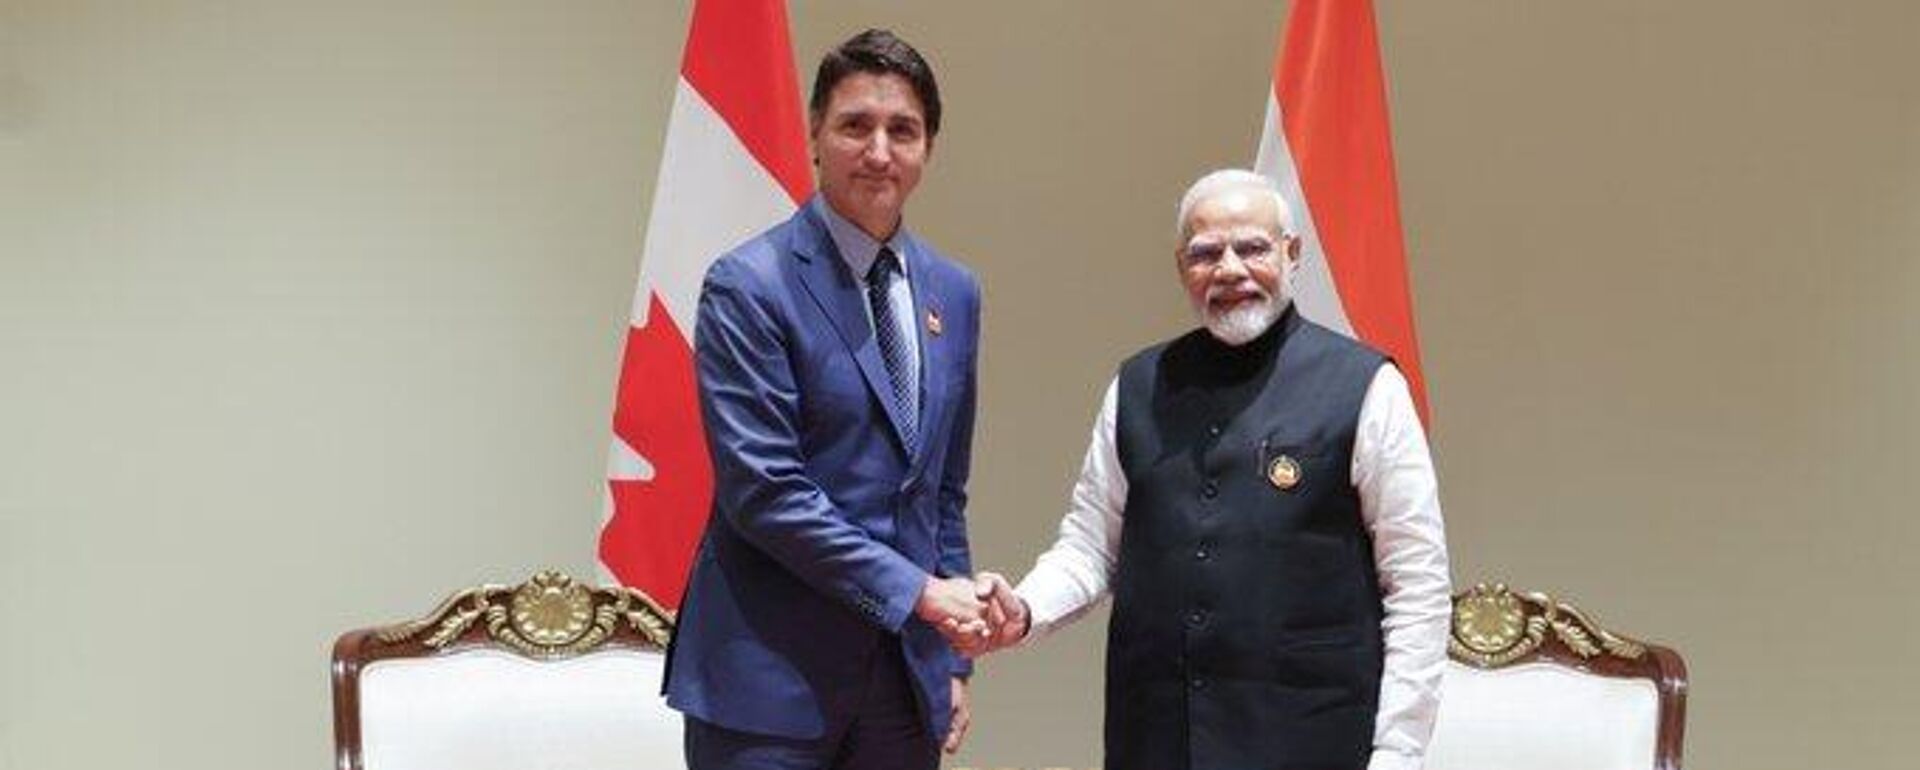 Los primeros ministros Narendra Modi, de la India, y Justin Trudeau, de Canadá habrían abordado el tema de asesinato del activista sij durante la cumbre del G20 en Nueva Delhí. - Sputnik Mundo, 1920, 19.09.2023